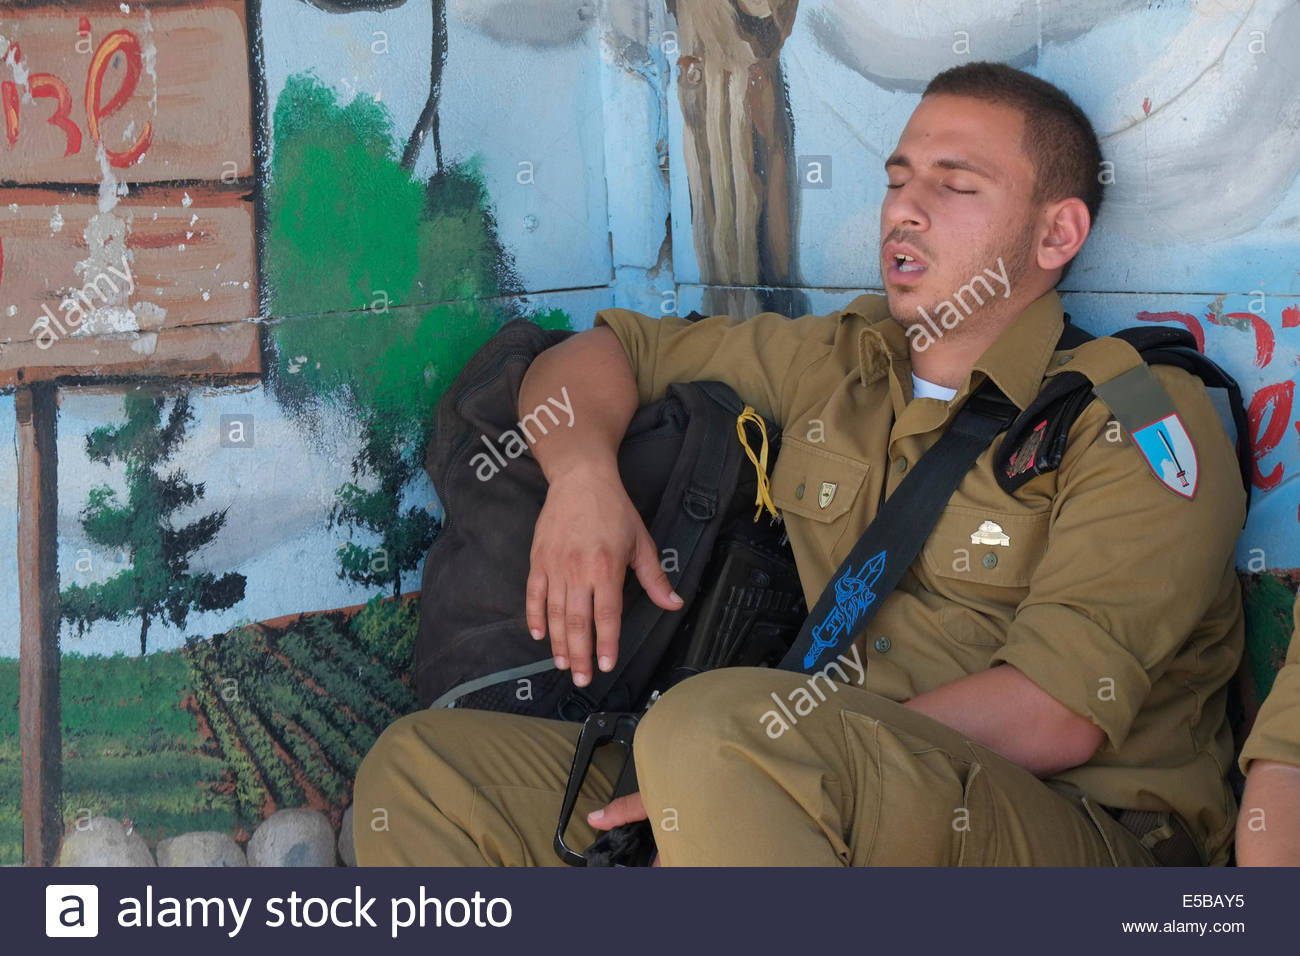 un-soldado-israeli-durmiendo-en-una-estacion-de-autobuses-cerca-de-sderot-en-el-sur-de-israel-e5bay5.jpg